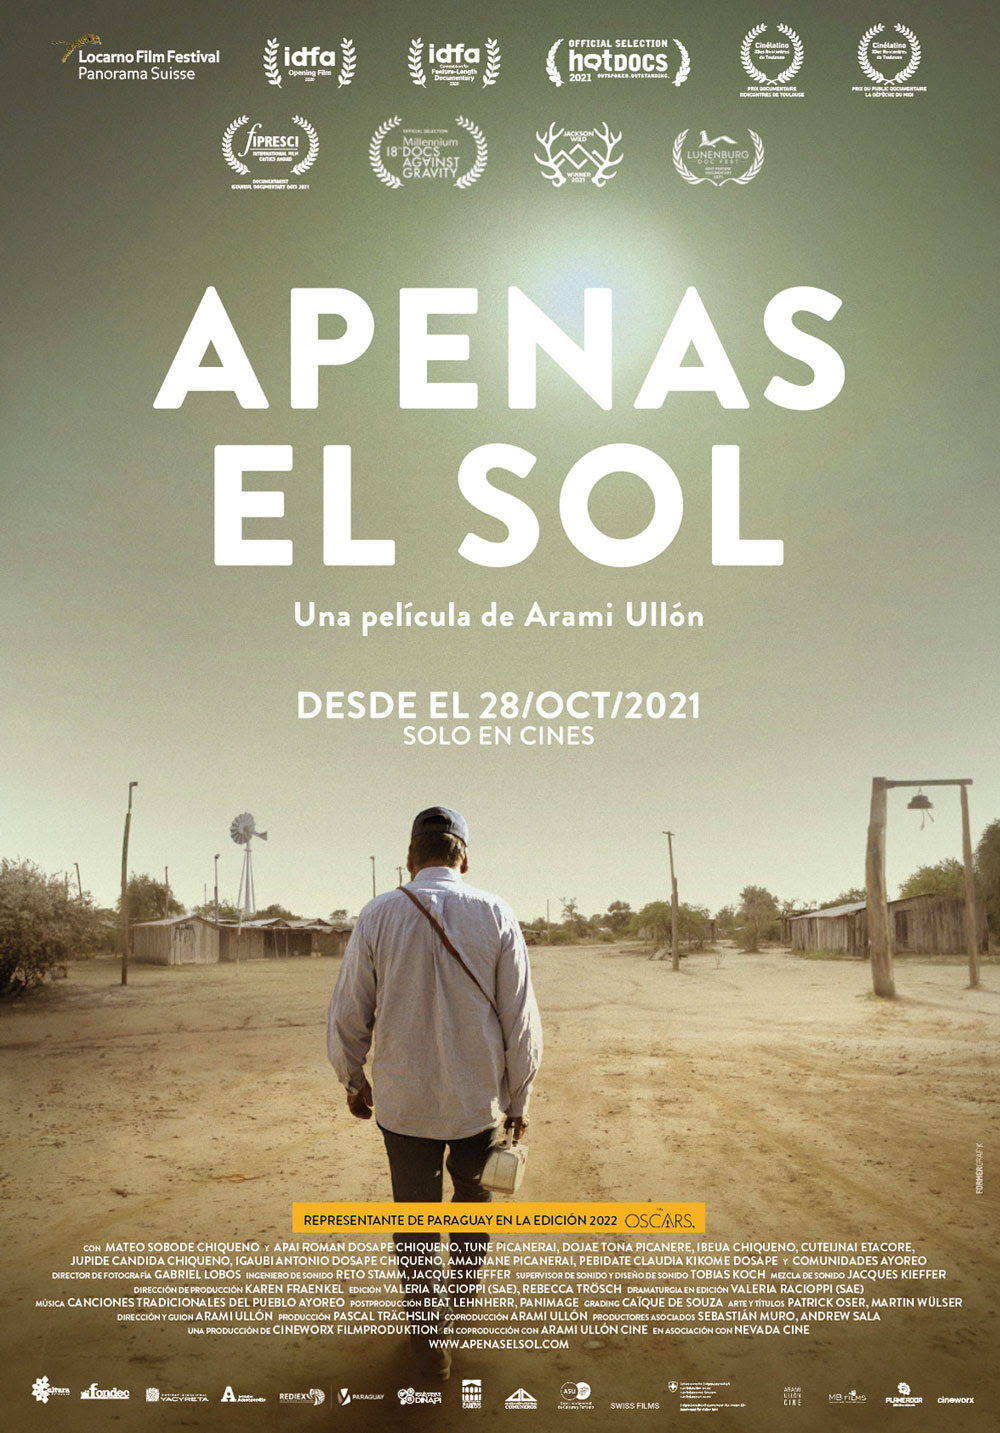 Apenas el Sol es la película elegida por la Academia de Cine del Paraguay para representar al país en los premios Óscar imagen